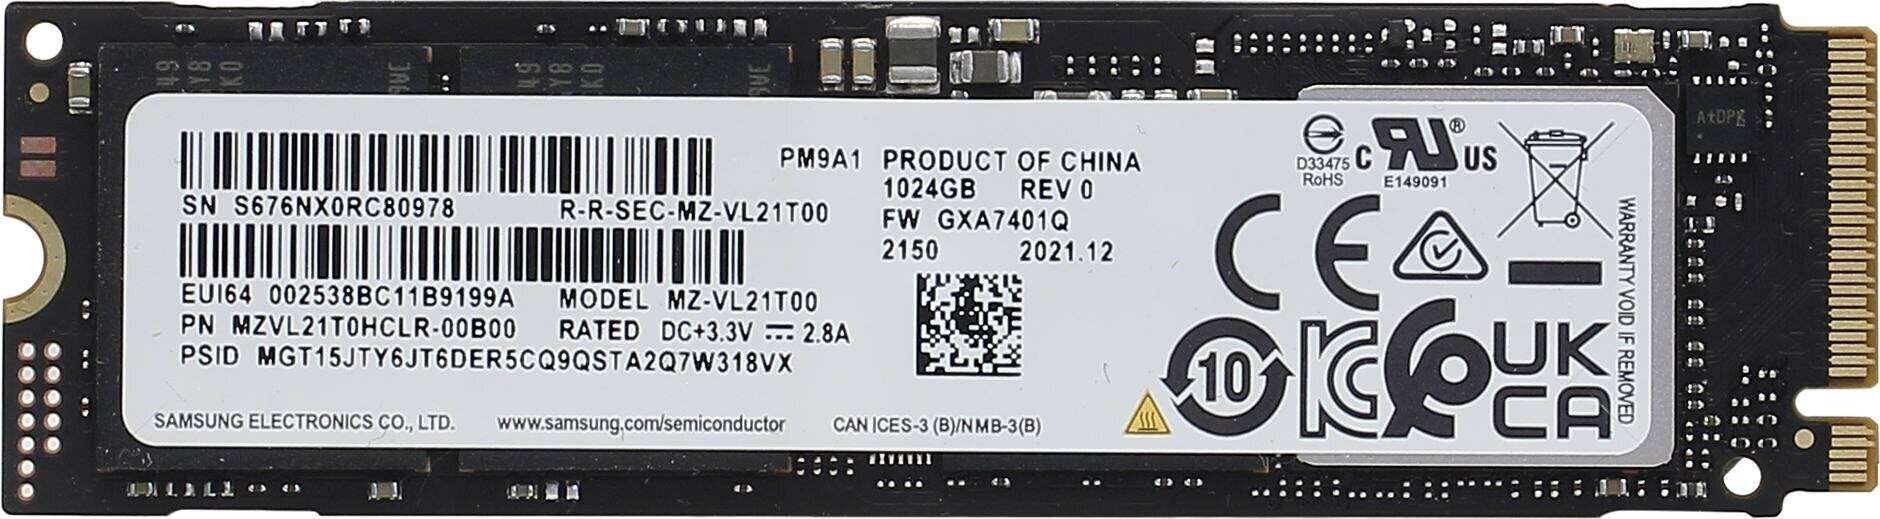 SSD накопитель Samsung 1Tb PM9A1 (MZVL21T0HCLR-00B00)